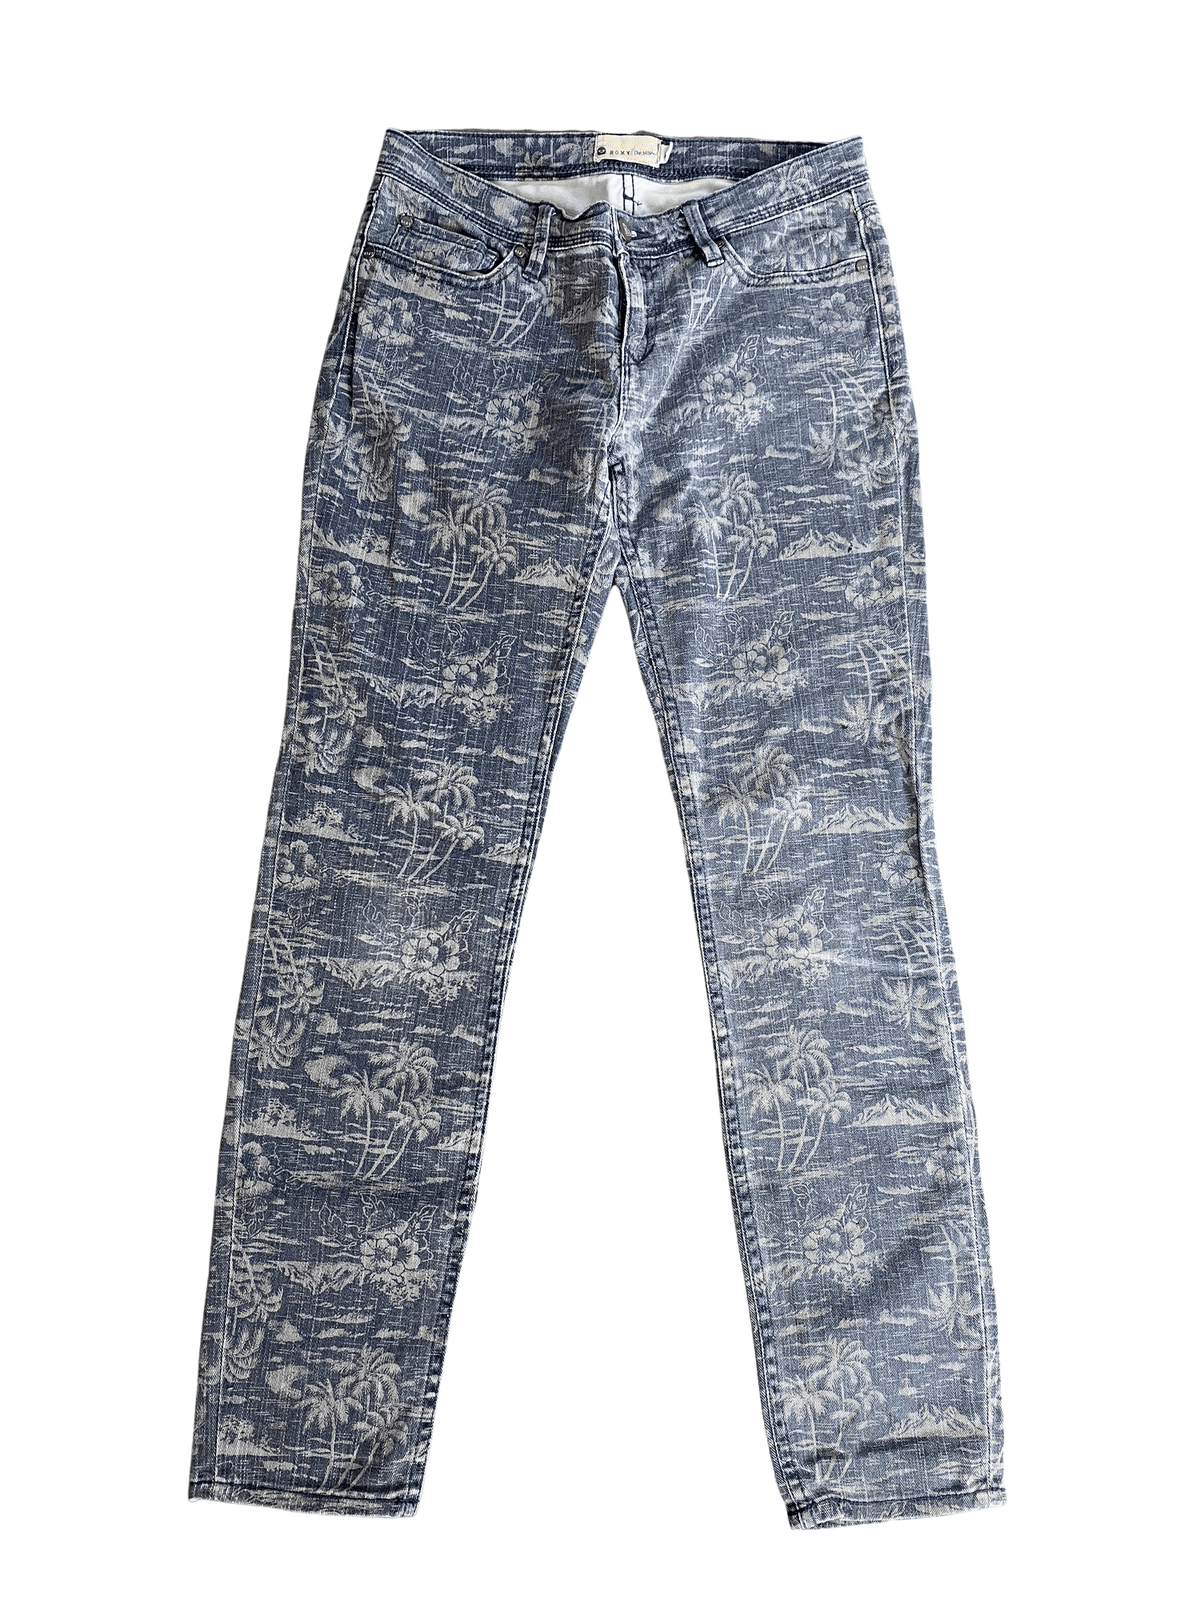 Roxy grey tropical print skinny jeans | size W:25